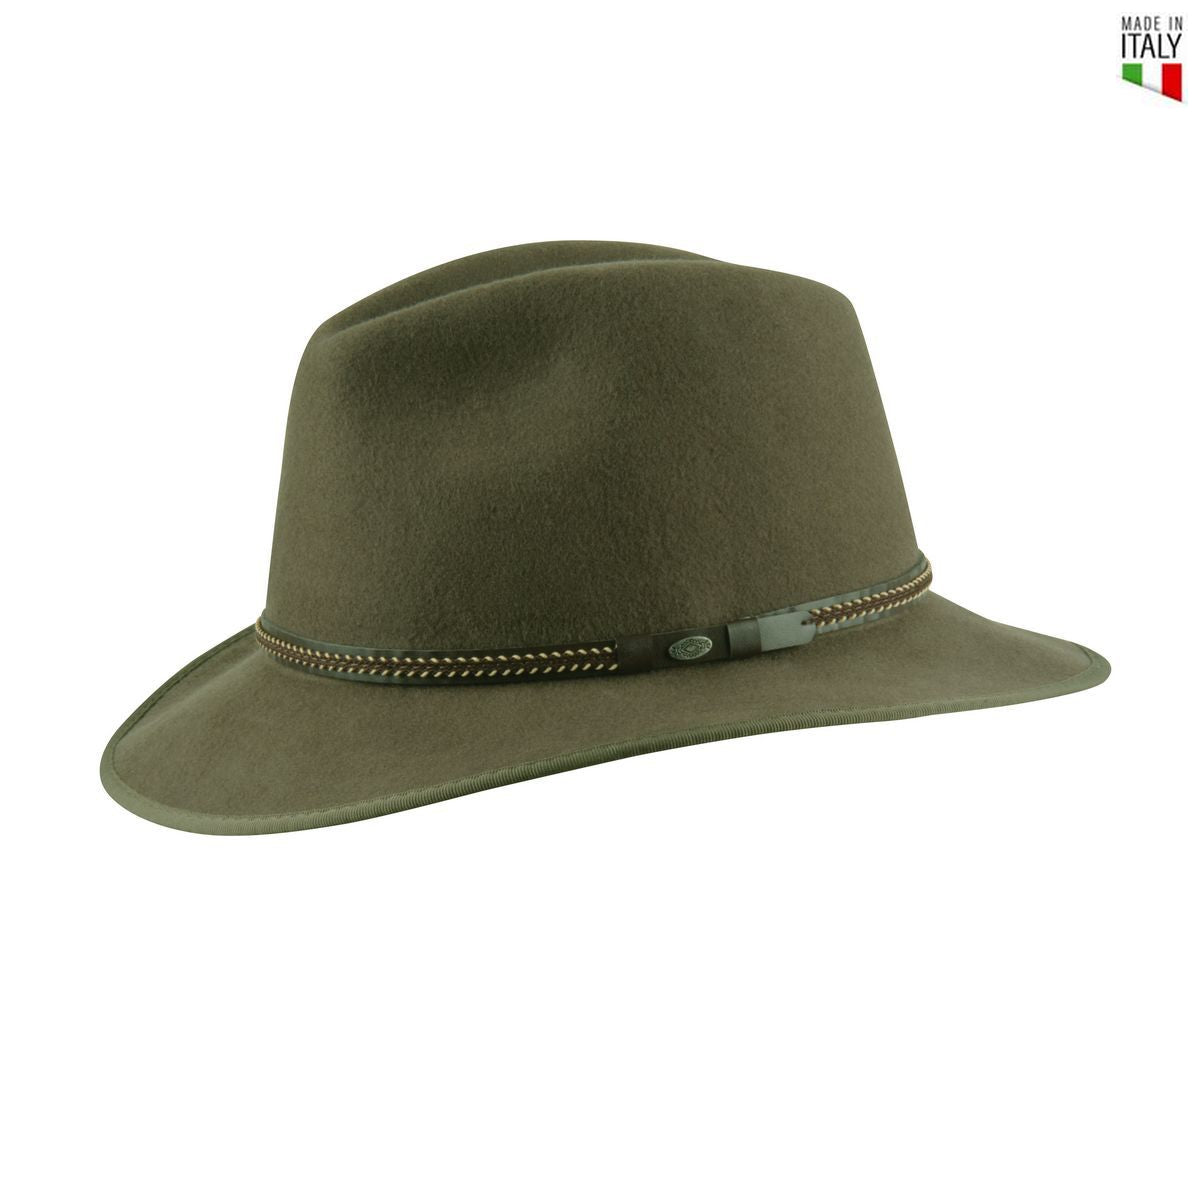 MJM Johnson Olivengrøn Uld Filt Hat - Waterproof & Crushable - Traveller Hat fra MJM Hats hos The Prince Webshop